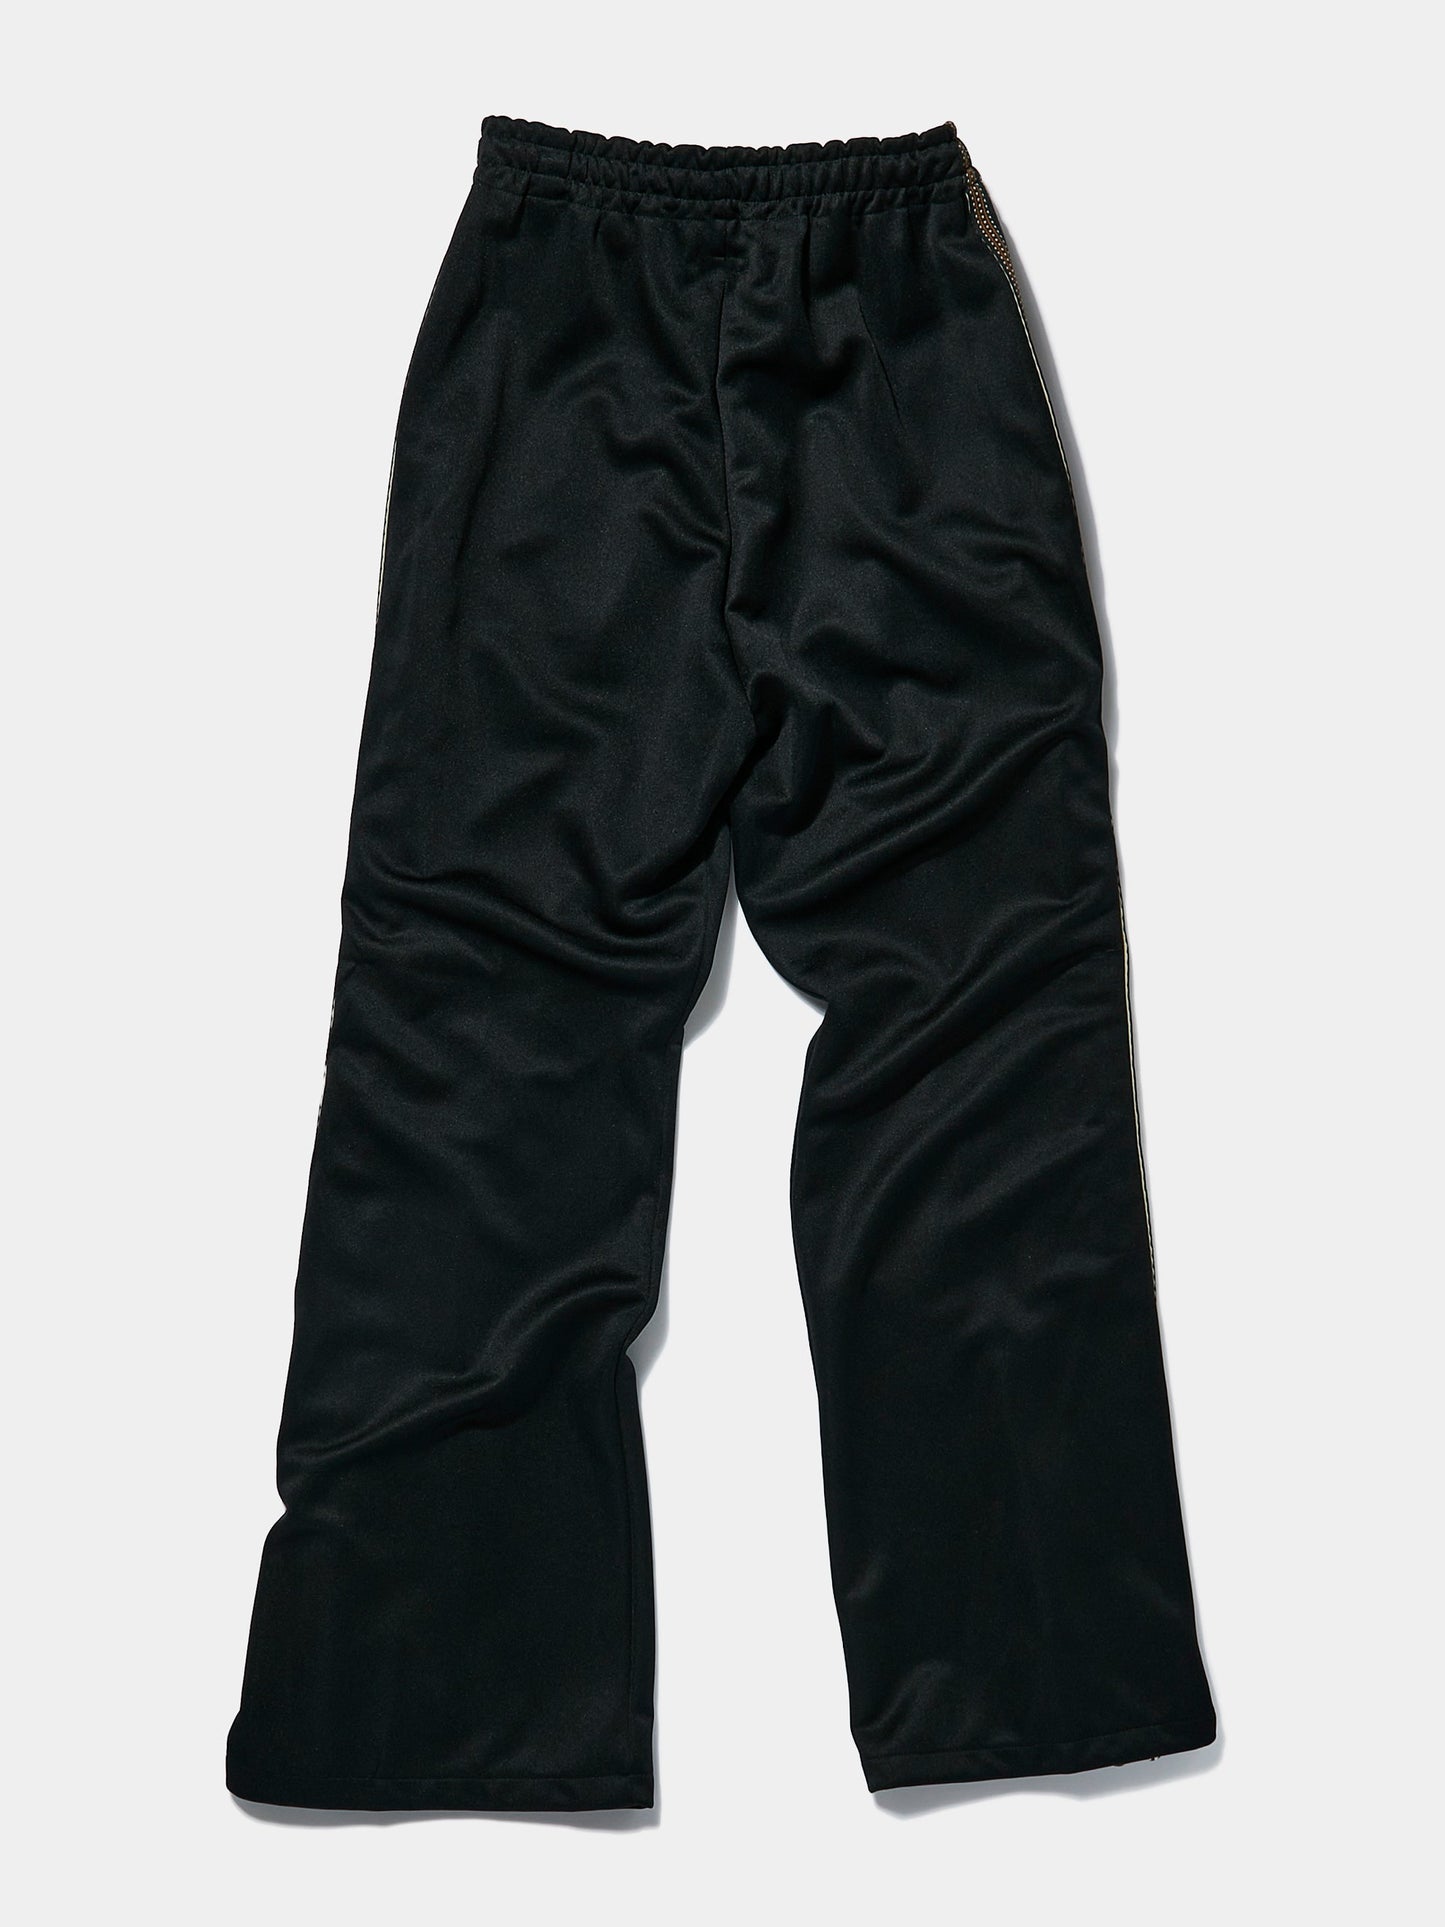 Smooth Jersey KOCHI & ZEPHYR Track Pants (Side Line) (Black)